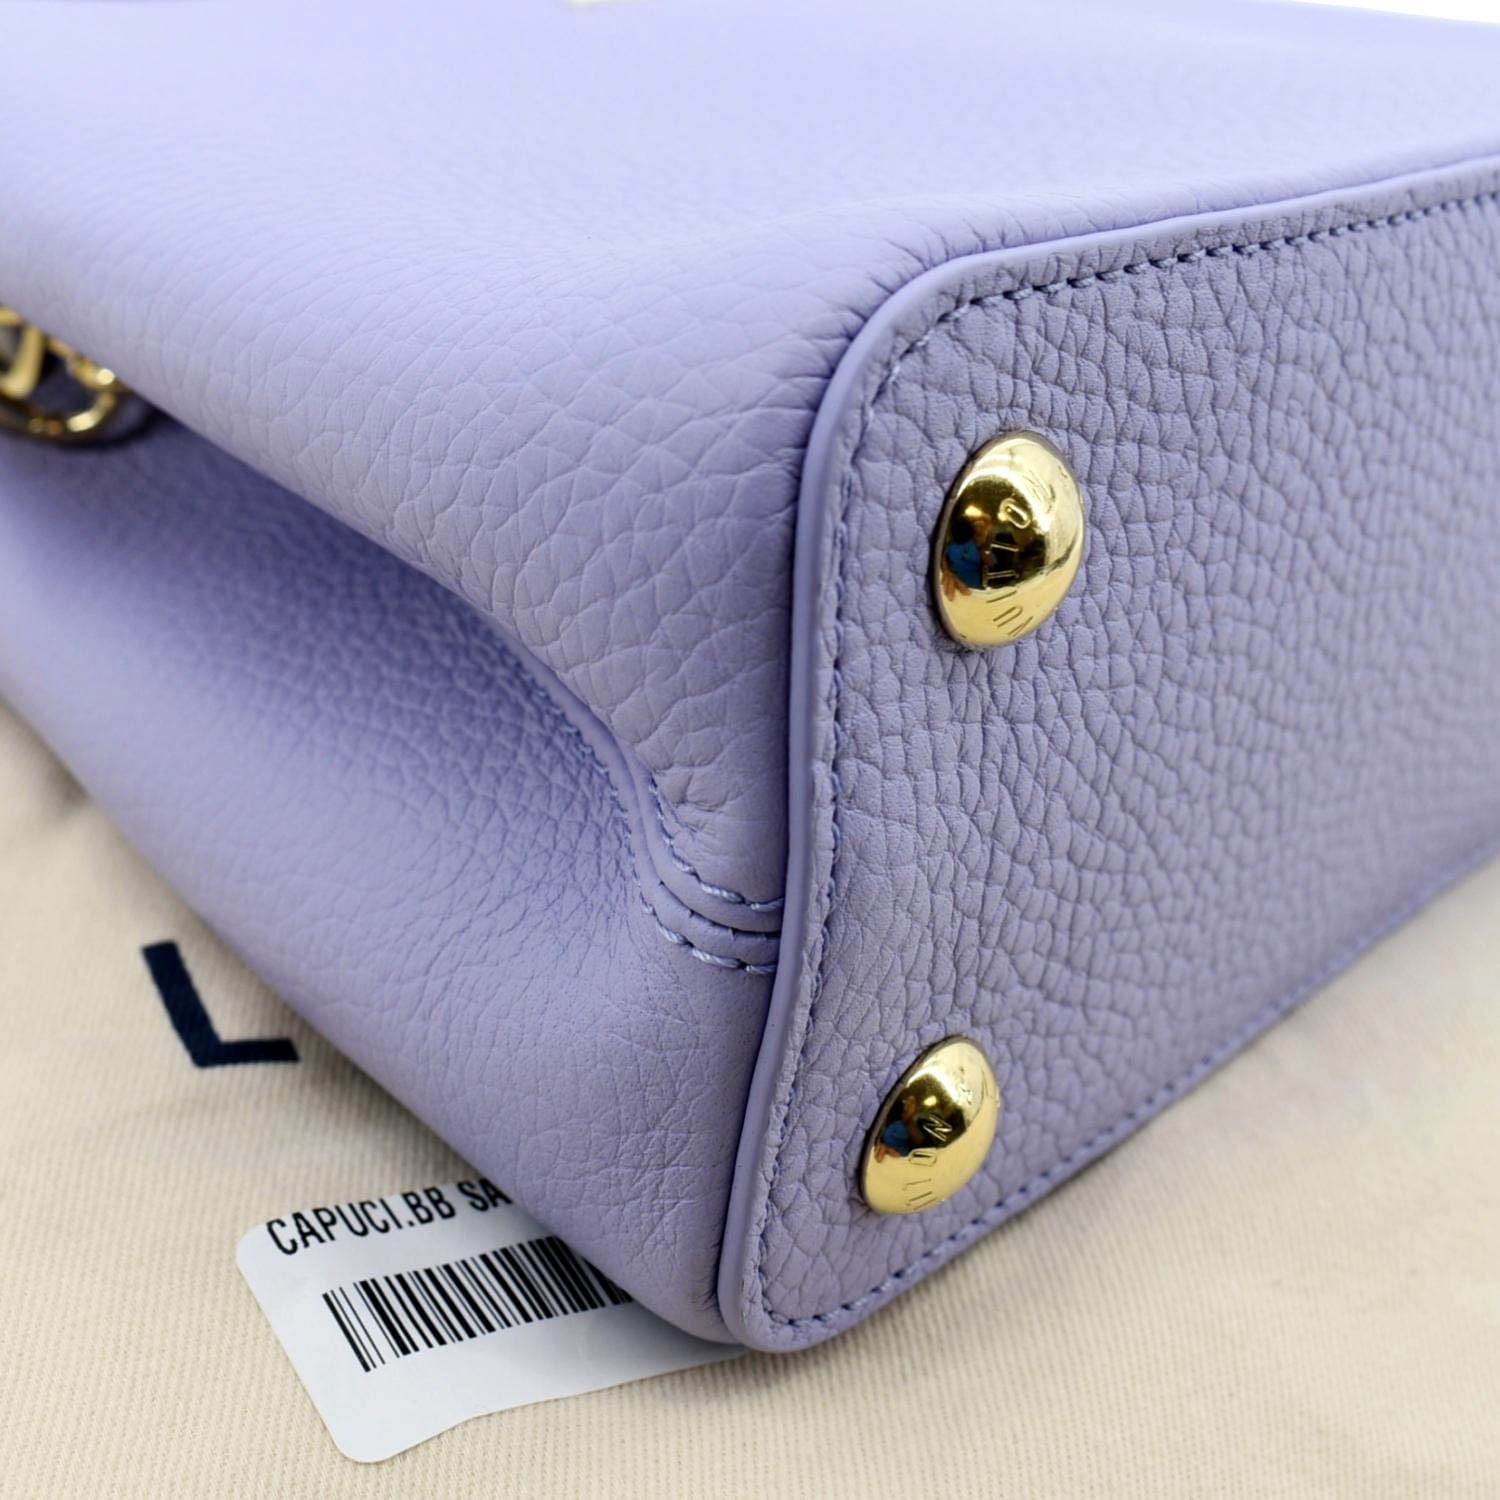 Louis Vuitton Capucines Womens Shoulder Bags, Blue